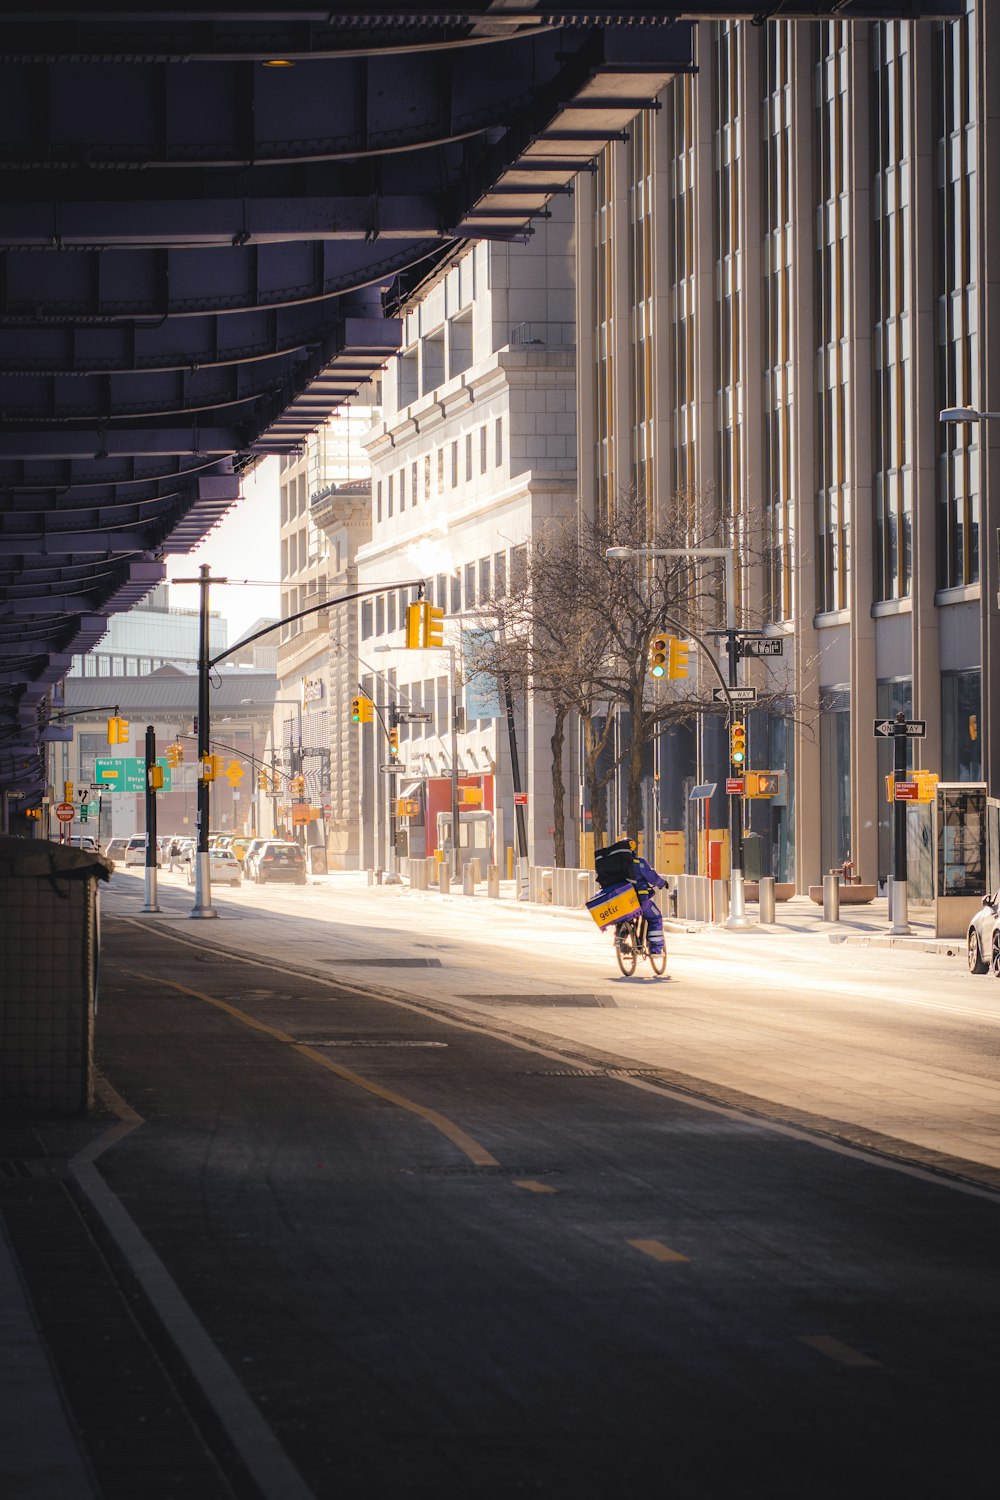 a person riding a bike down a city street